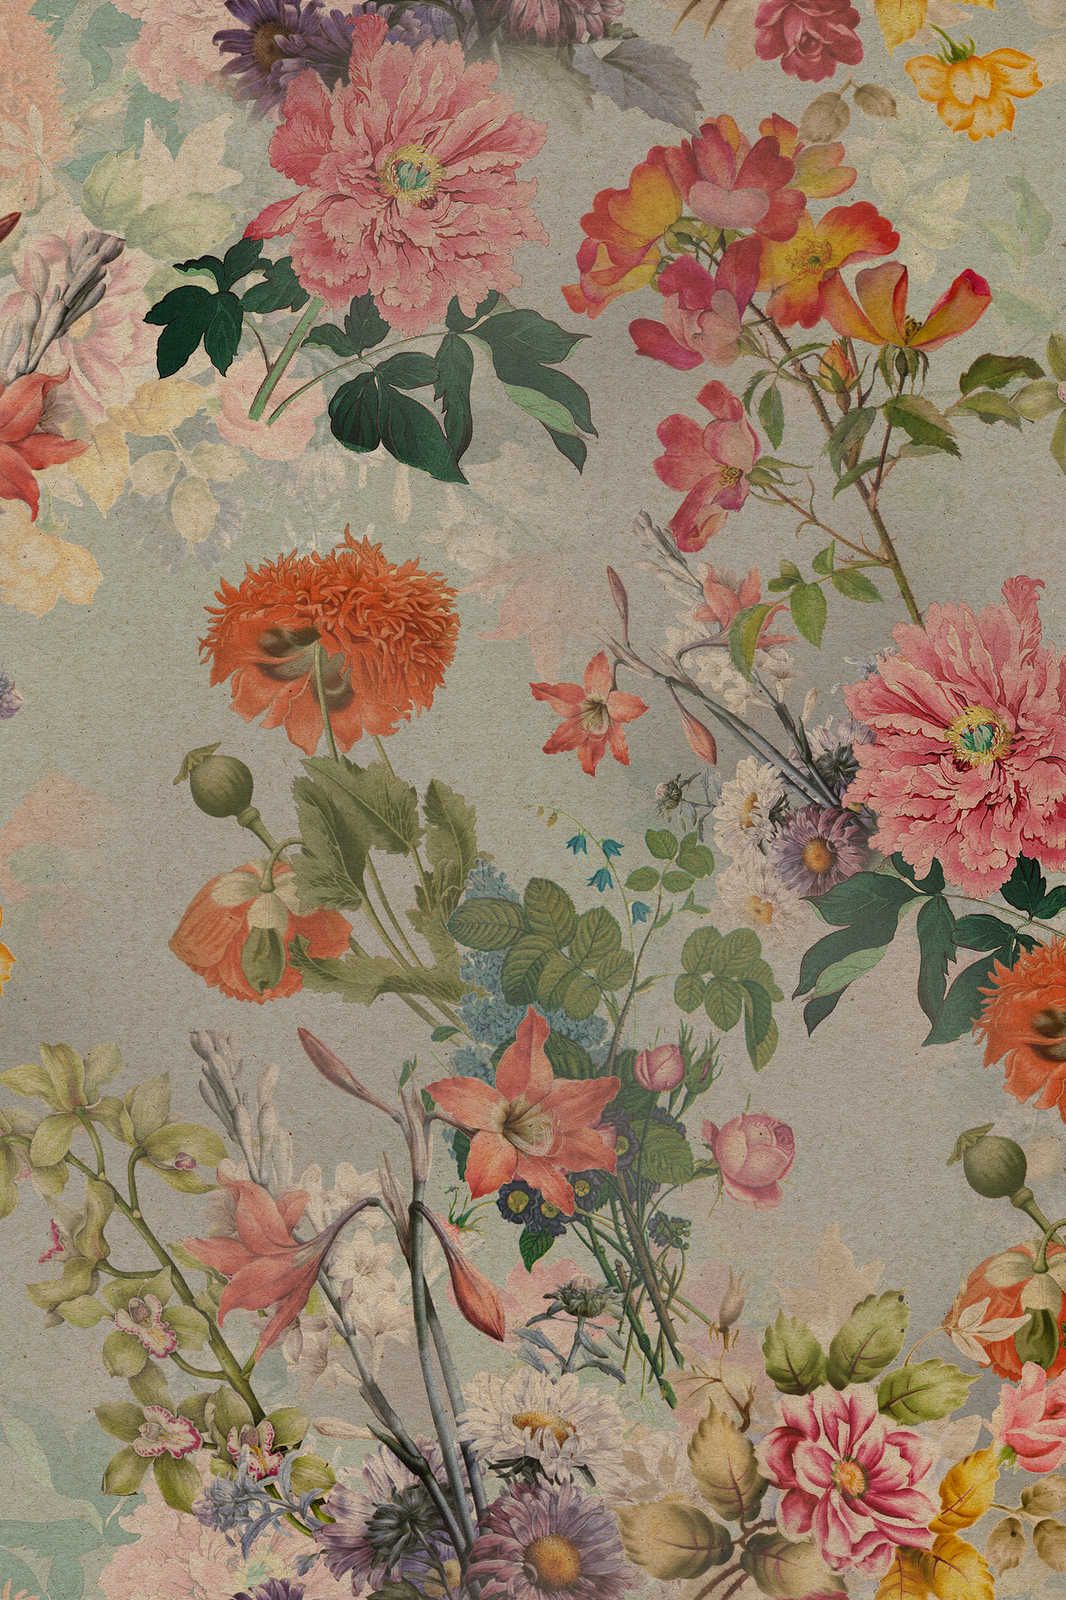             Amelies Home 1 - Quadro su tela in stile rustico romantico con fiori d'epoca - 0,90 m x 0,60 m
        